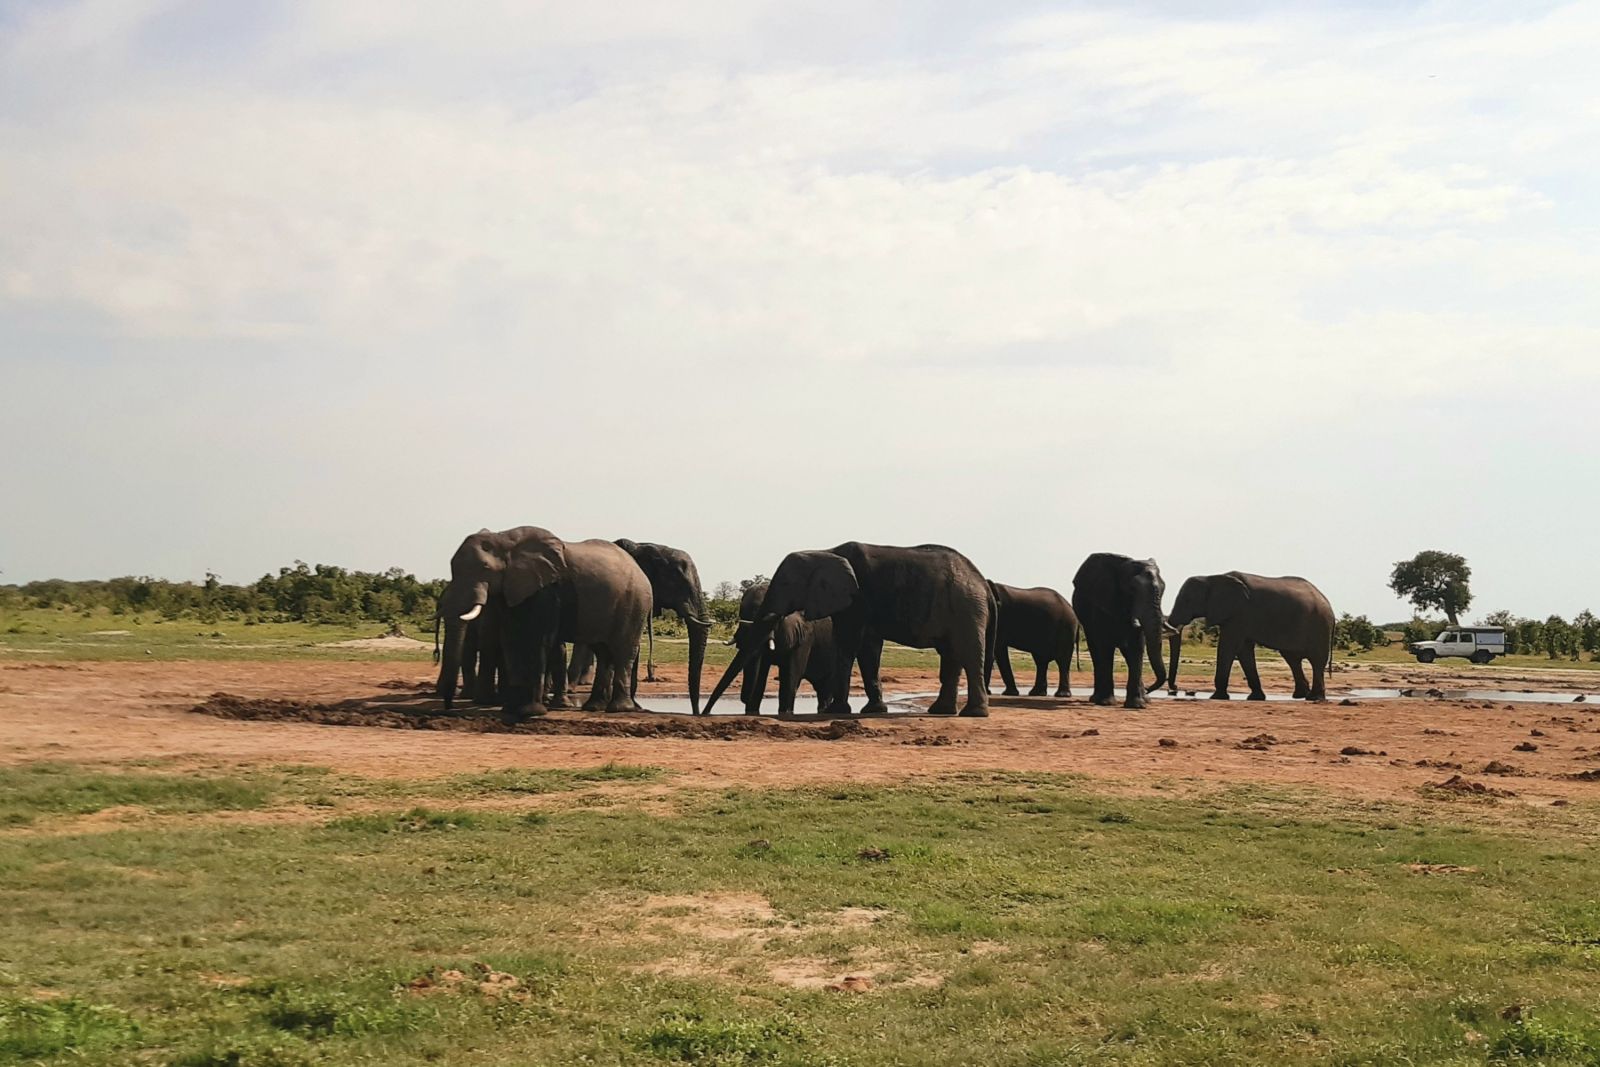 Elefanten stillen ihren Durst am Wasserloch